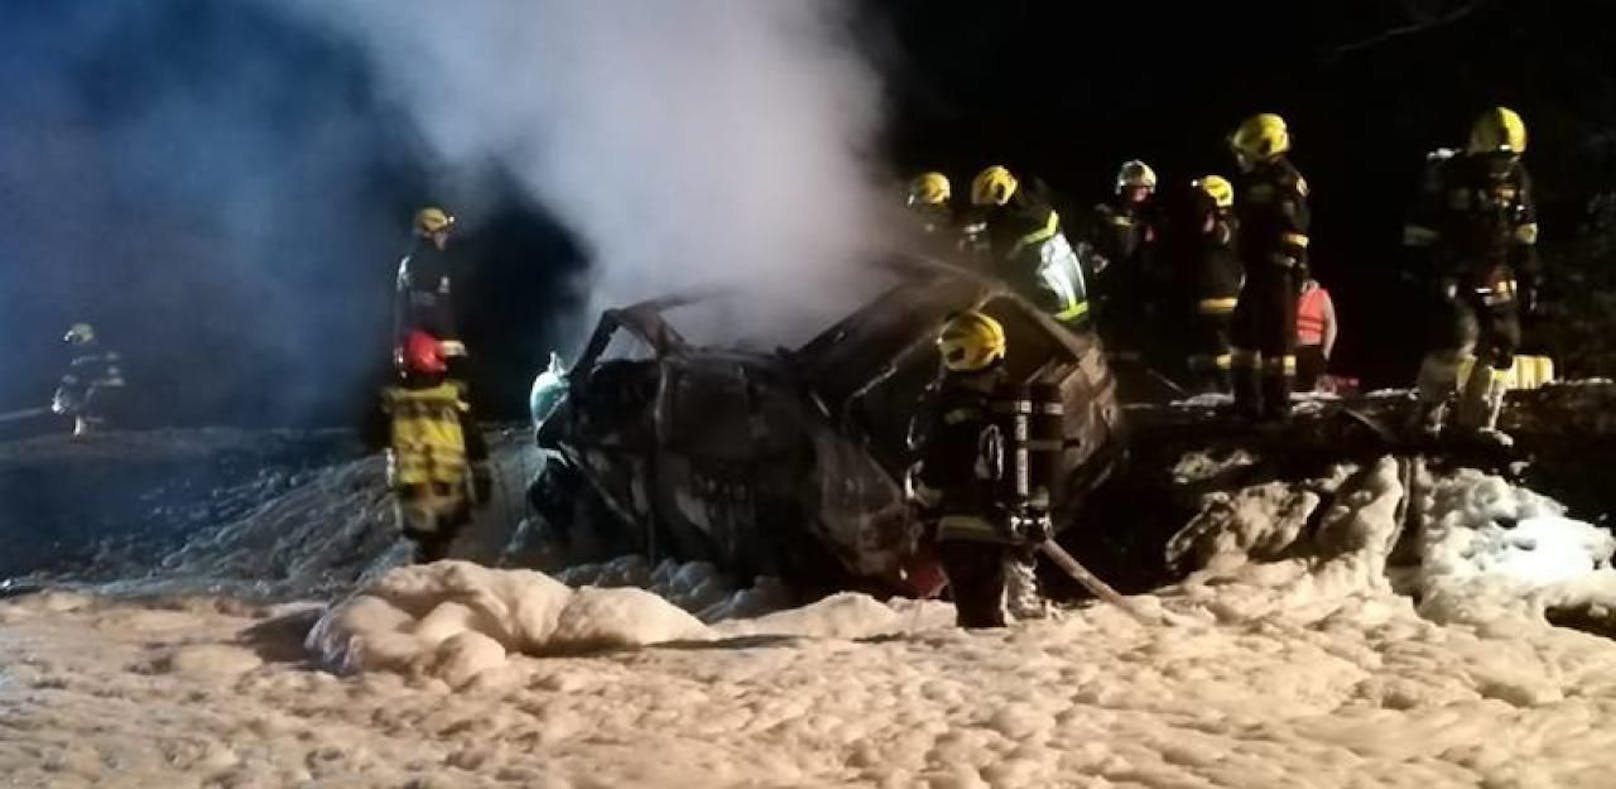 Auto fing bei Unfall Feuer: Lenker verbrannte